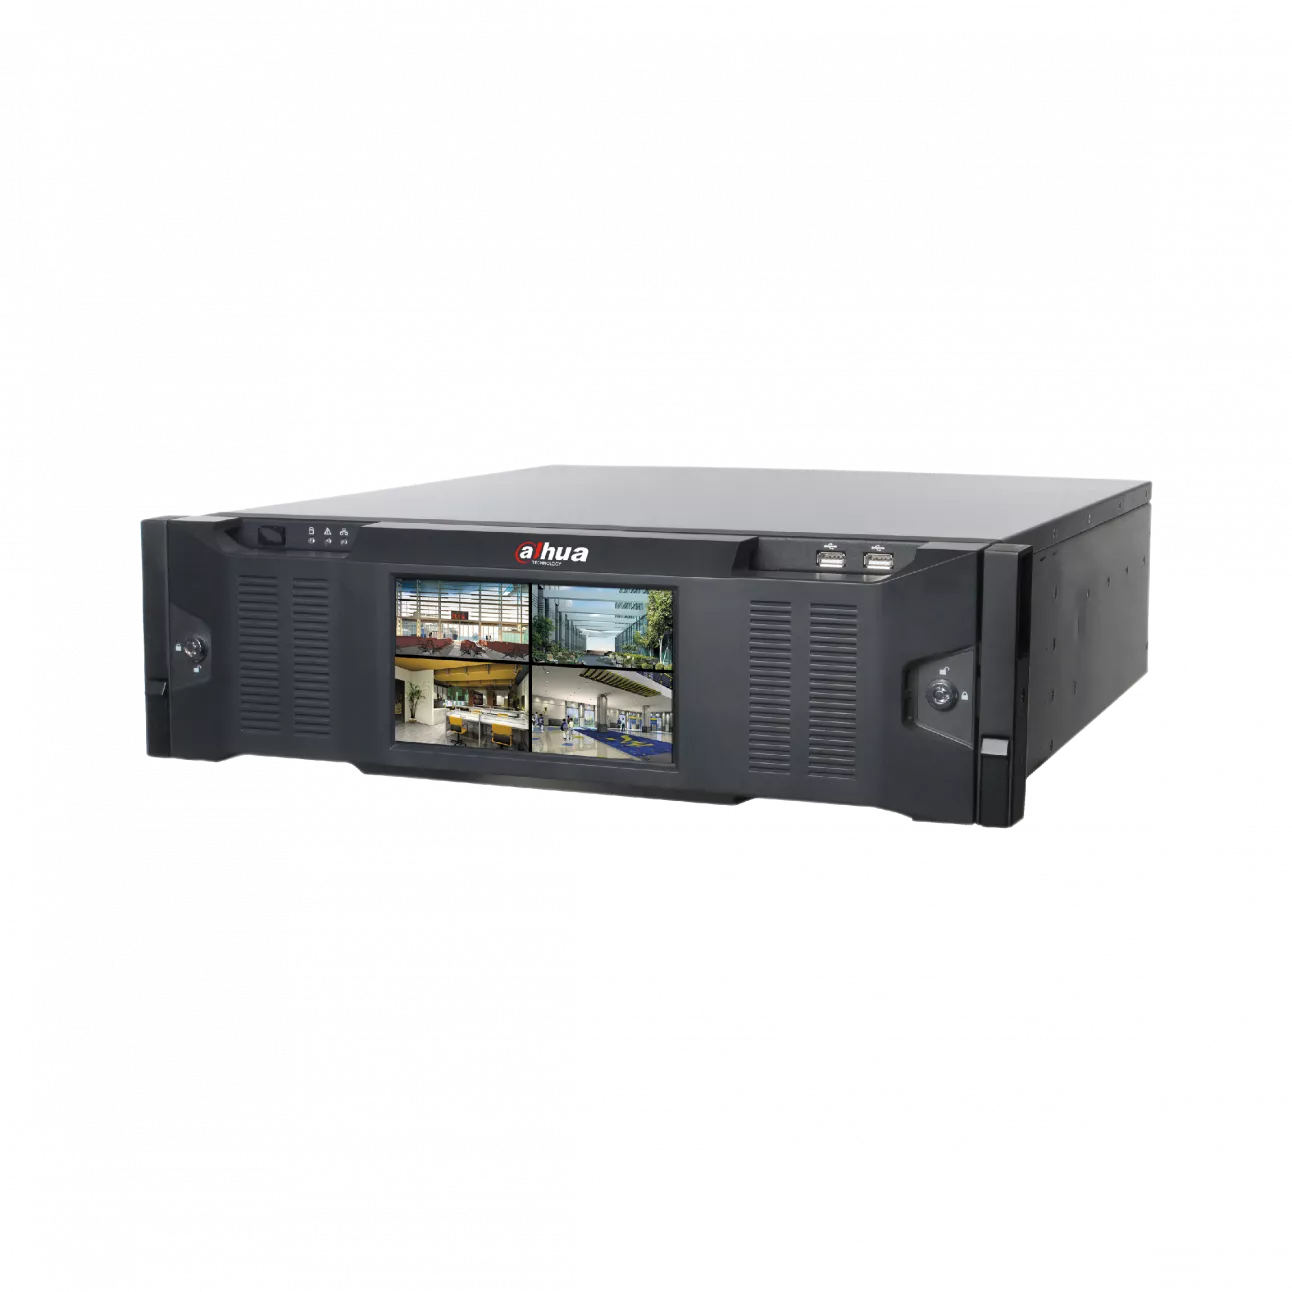 IP видеорегистратор Dahua DHI-IVSS7016DR c функцией распознавания лиц 256-канальный, до 12Мп, 16 SAS/SATA HDD до 10Тб